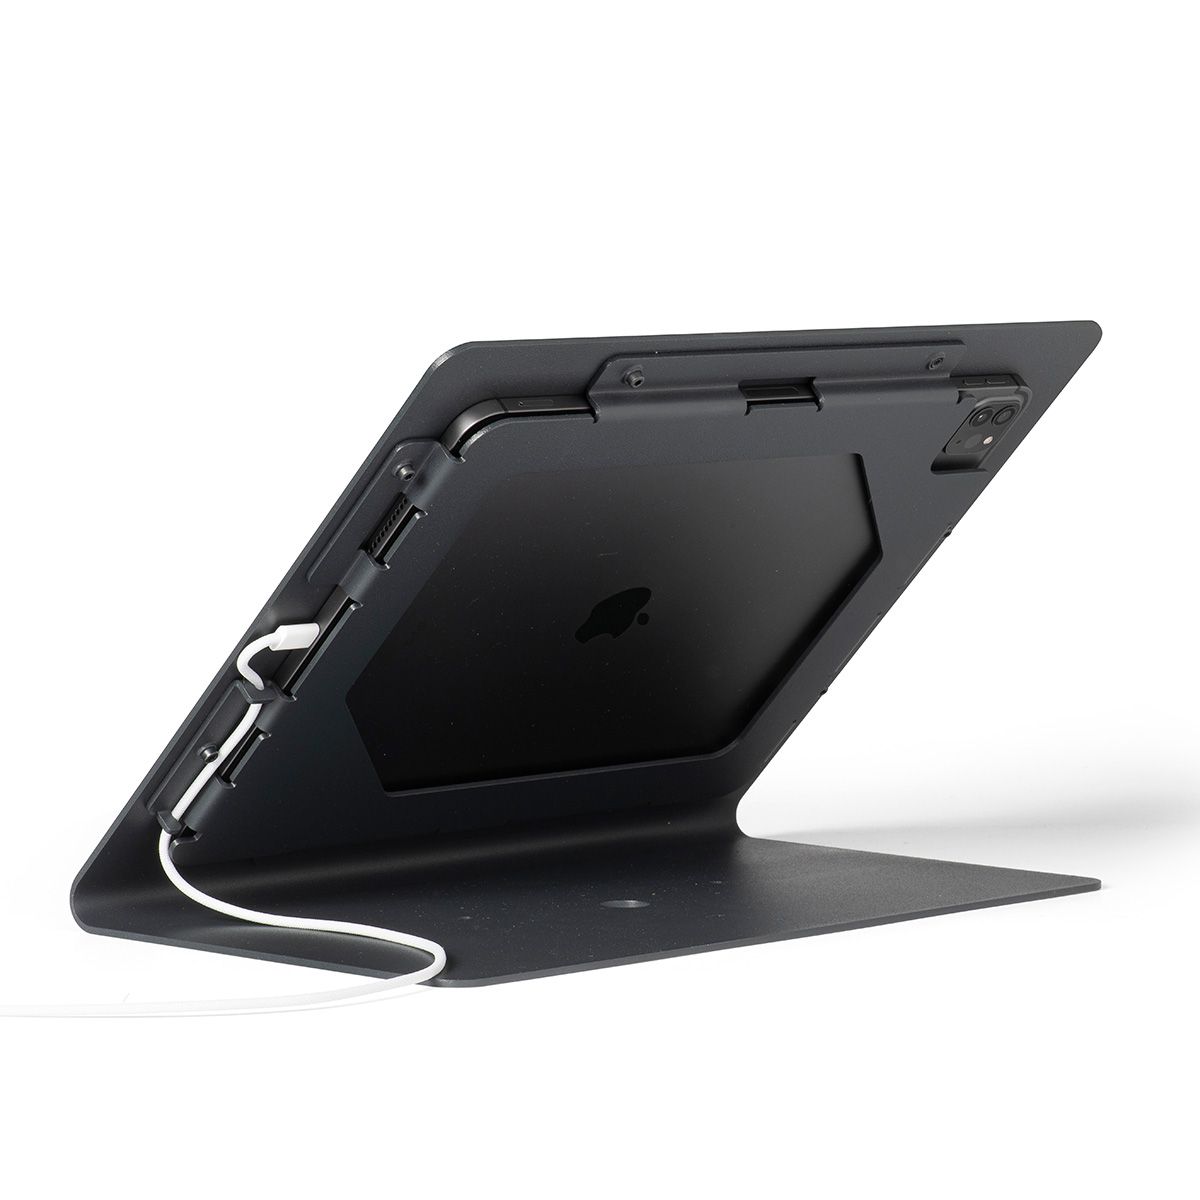 Support professionnel pour iPad Pro 12,9 pouces